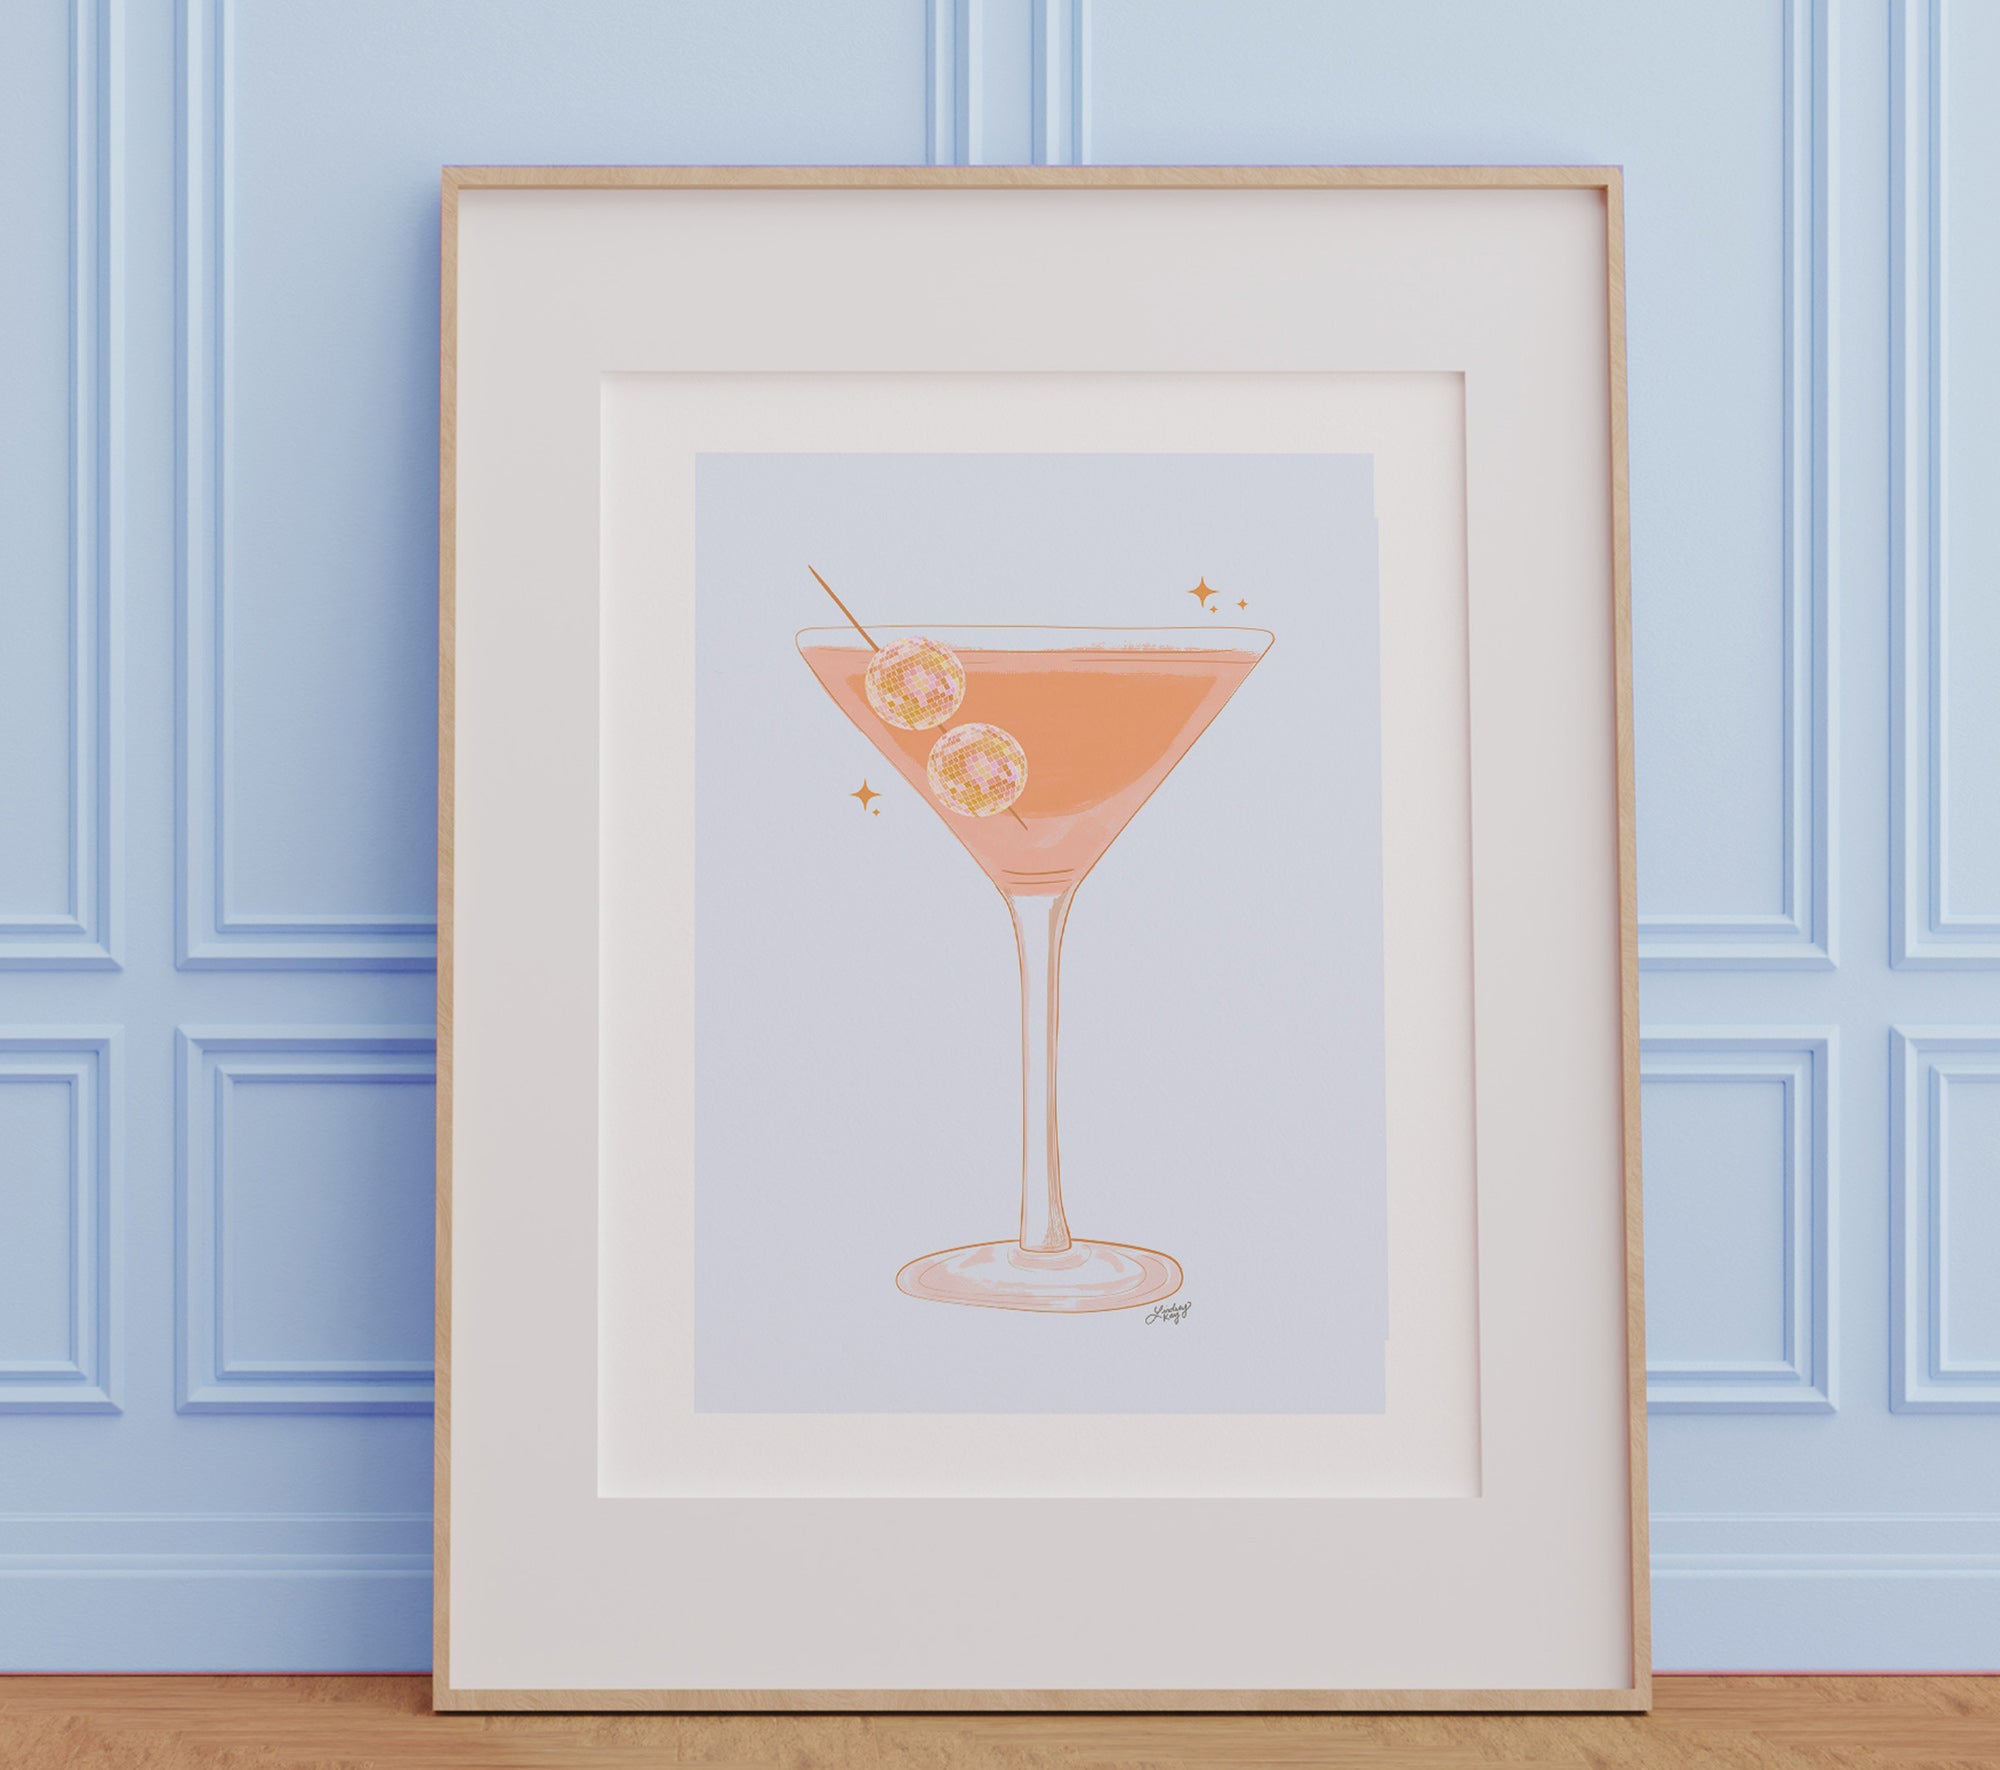 Ilustración de Disco Ball Martini (paleta naranja/amarilla) - Impresión de arte